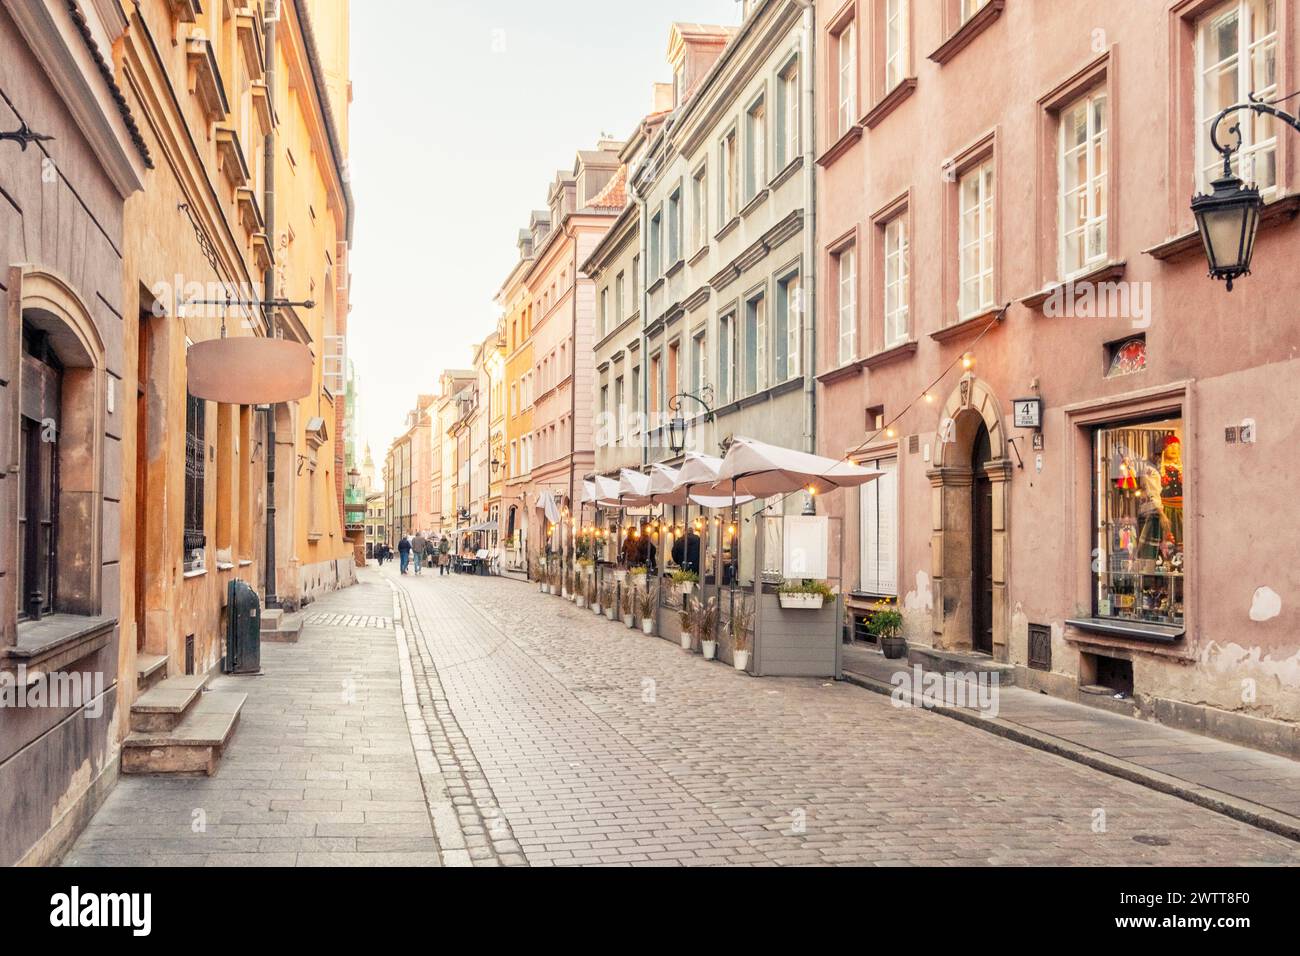 Die gepflasterte Straße, die bei Sonnenuntergang in ein sanftes, warmes Licht getaucht ist, gesäumt von malerischen Geschäften und Restaurants in einer historischen europäischen Stadt. Stockfoto